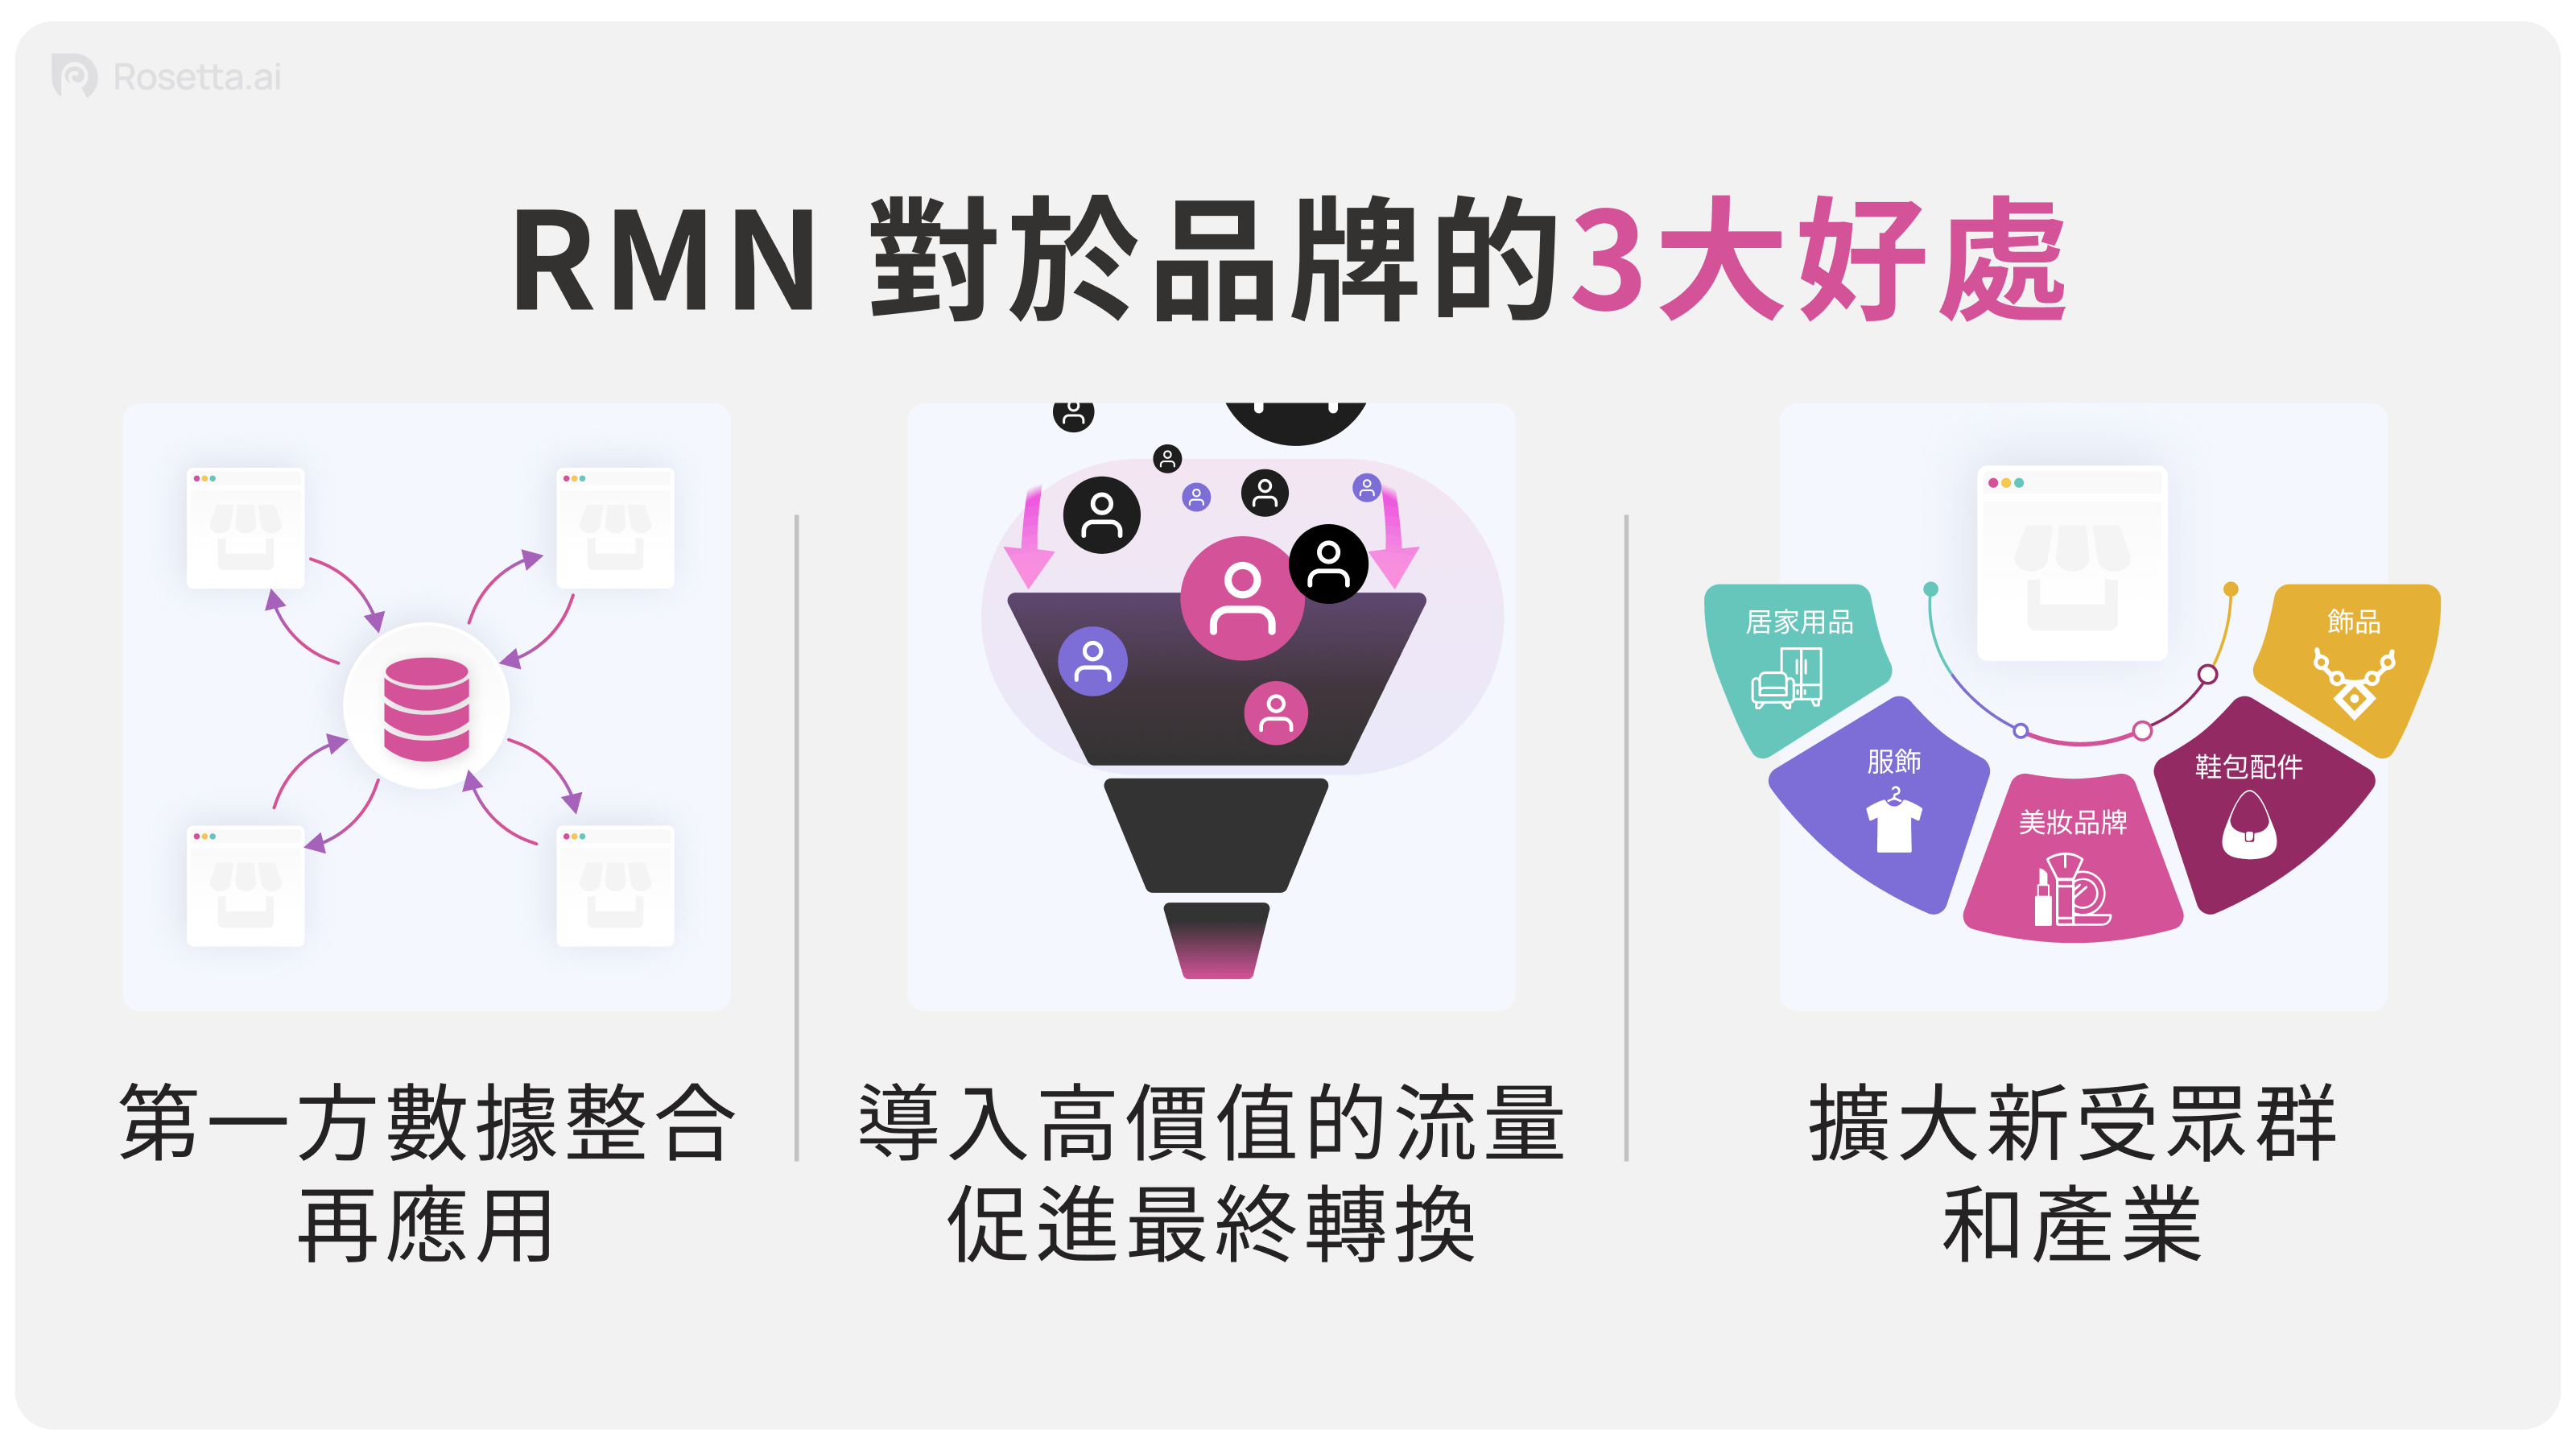 Rosetta.ai - RMN 對於品牌的三大好處